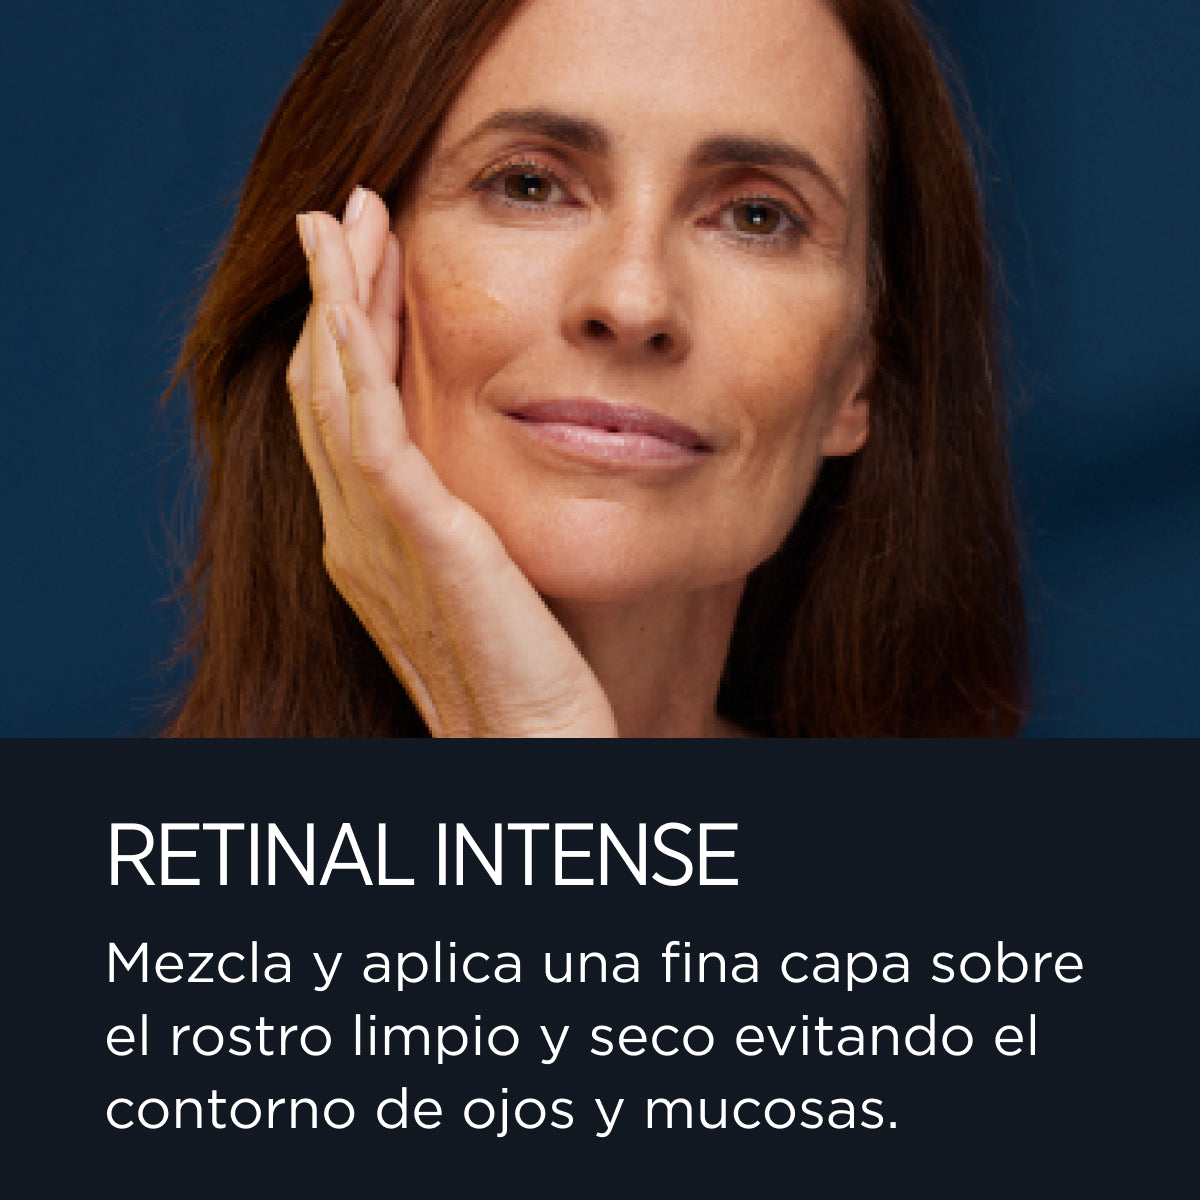 Retinal Intense - Sérum de noche antiarrugas con retinaldehído